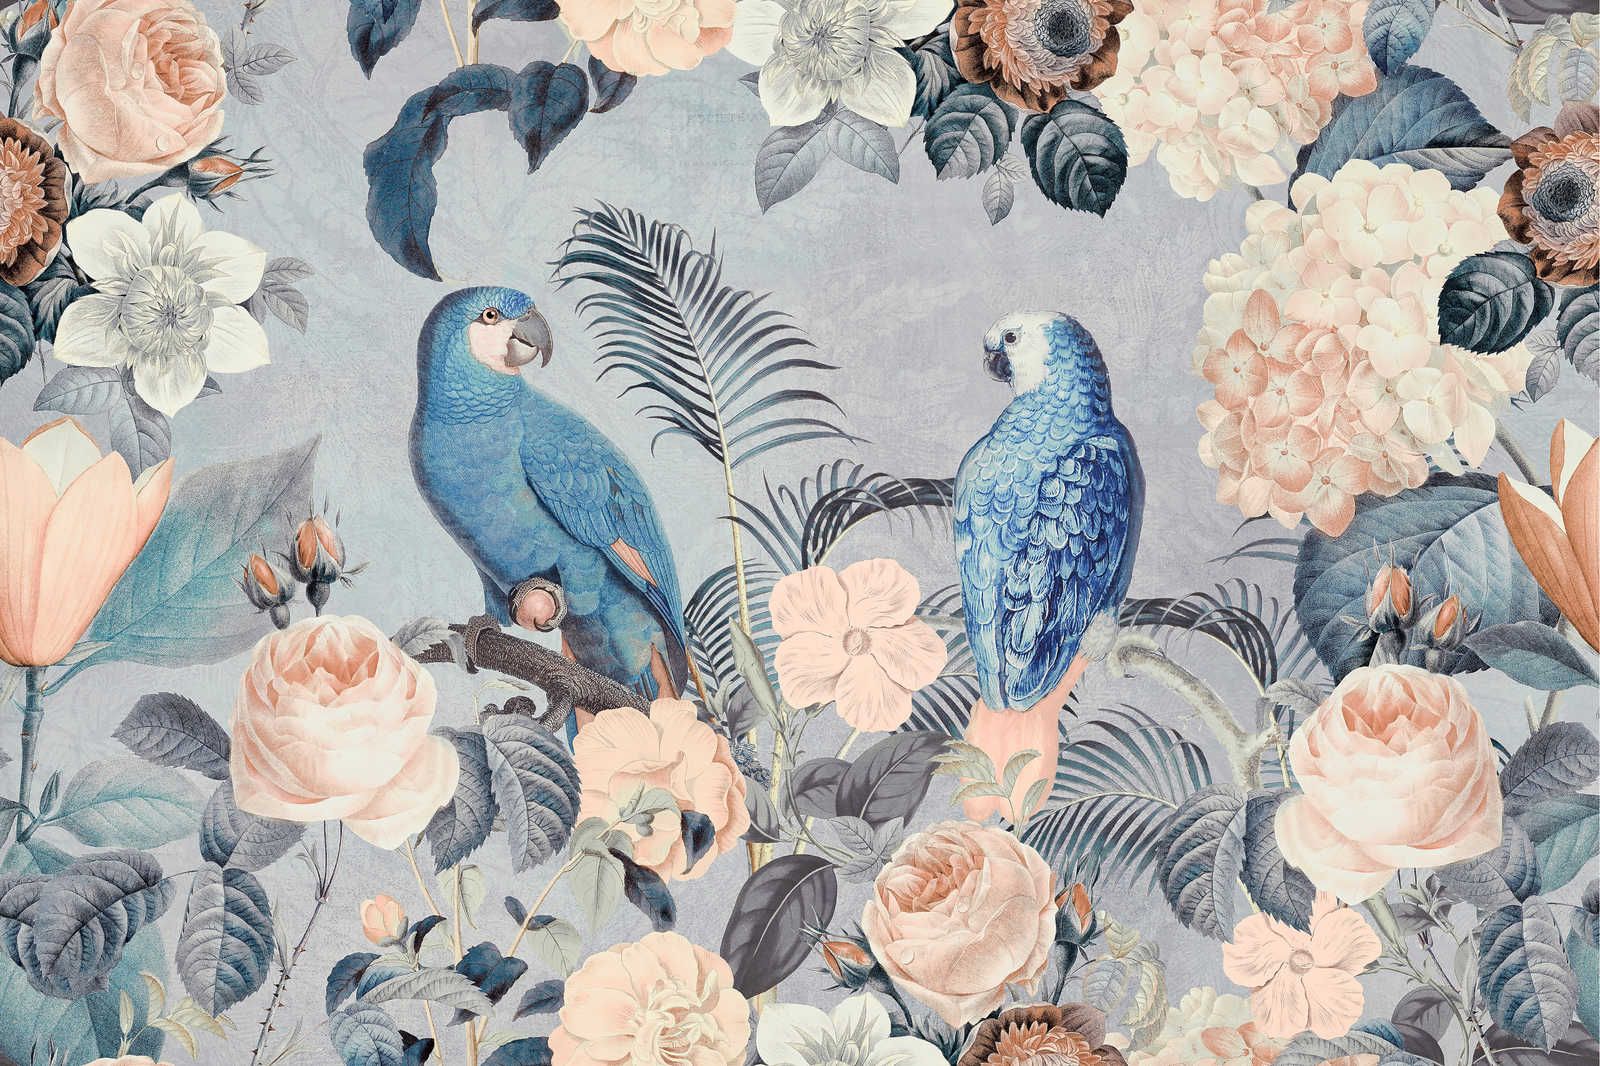             Canvas painting Parrots Rendezvous with flowers design - 0,90 m x 0,60 m
        